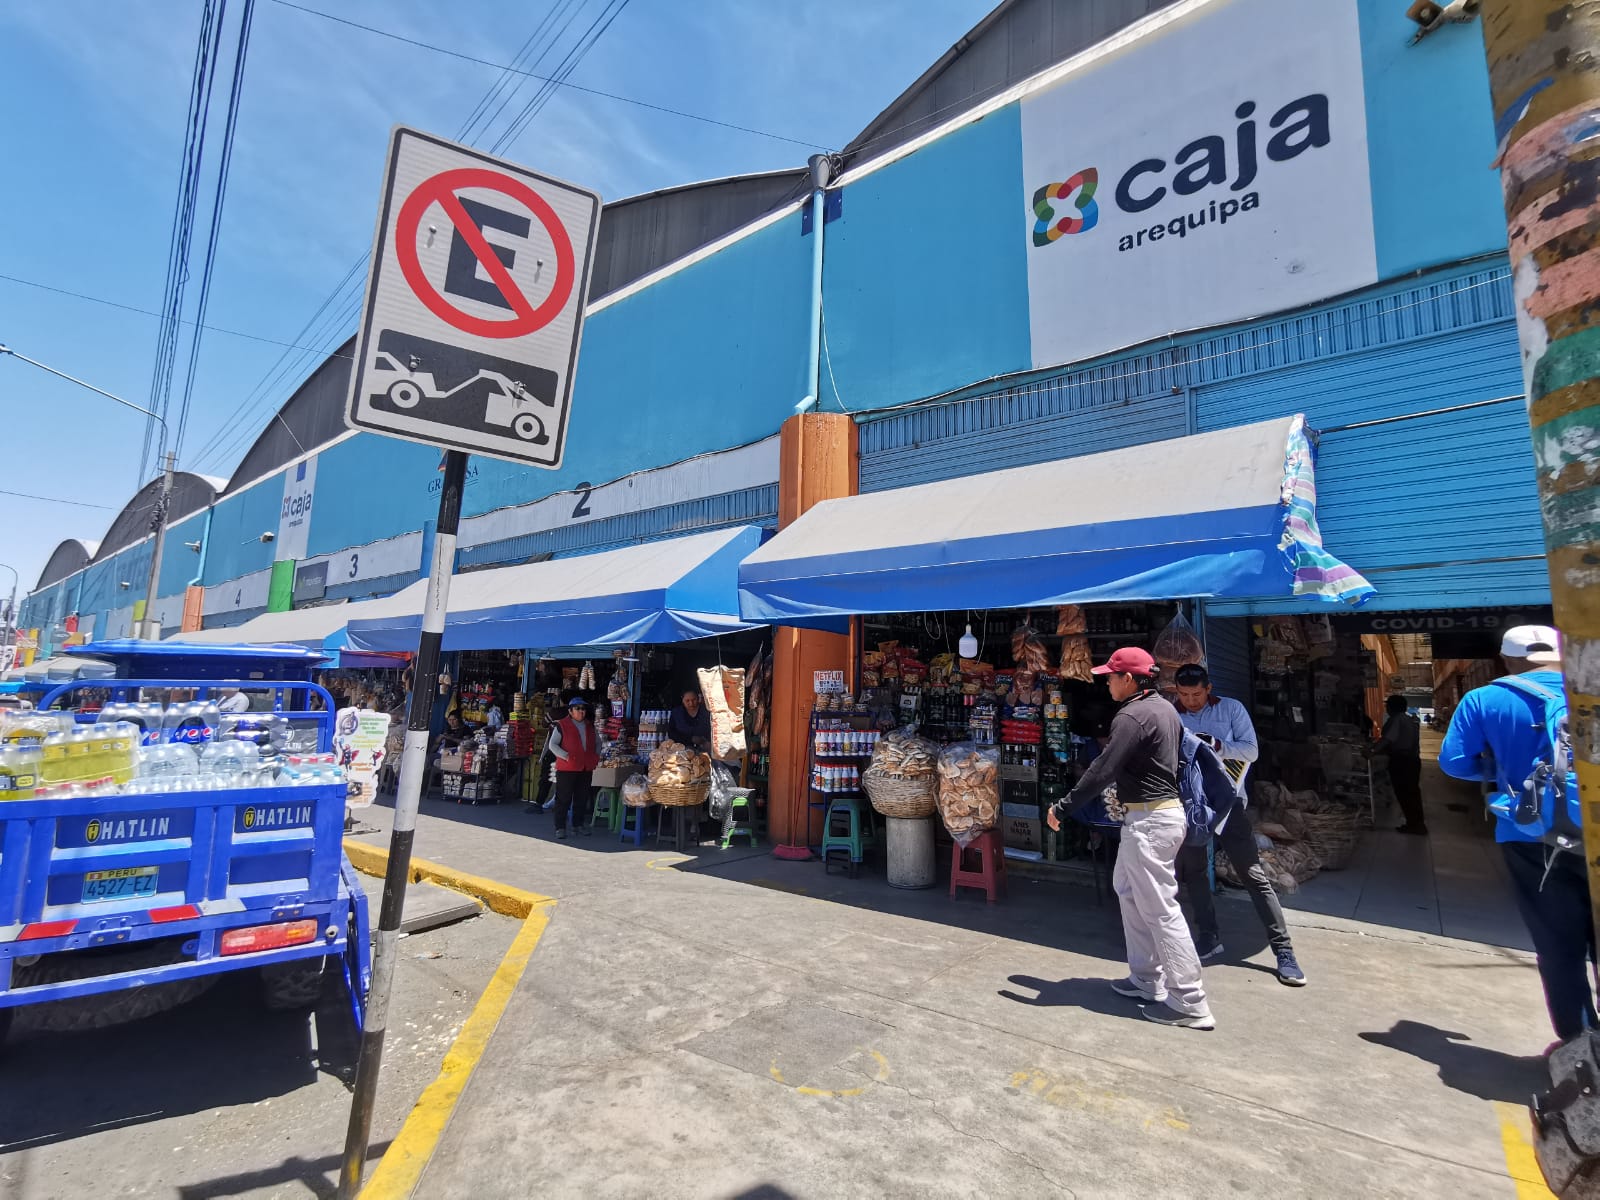 Comerciantes del centro comercial Gratersa piden mayor seguridad FOTO: Rosa Cabanillas